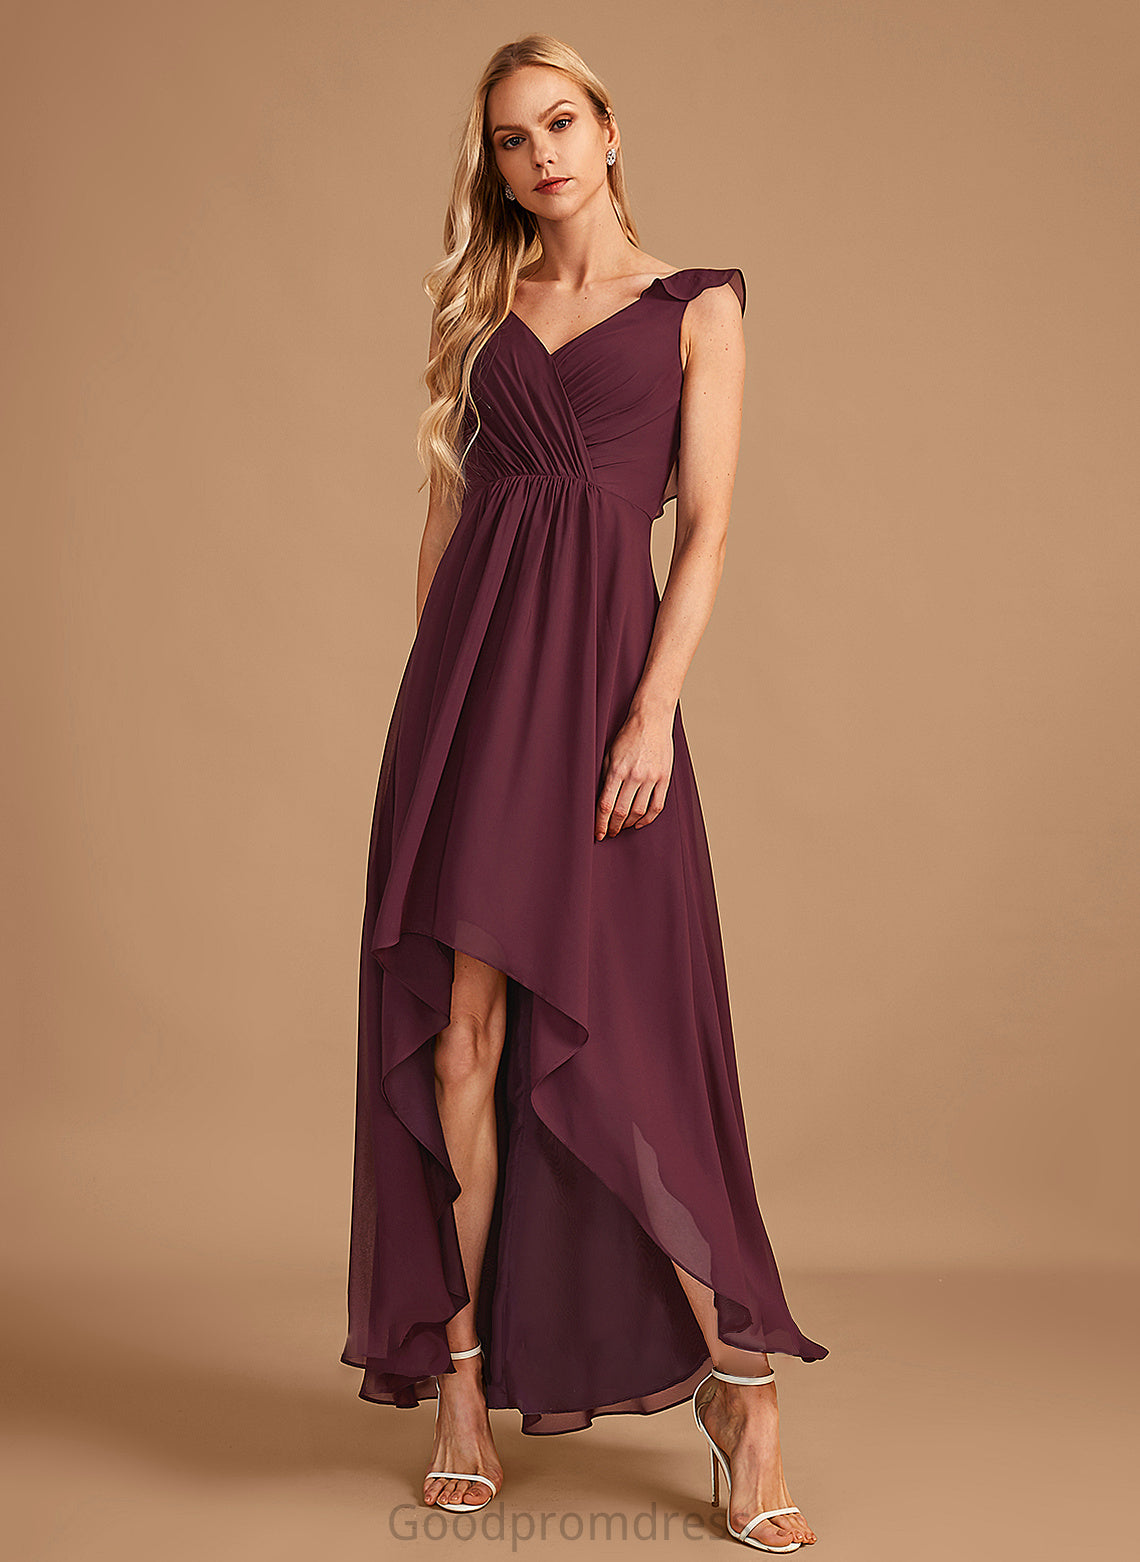 Fabric Silhouette Neckline Embellishment A-Line Length Ruffle V-neck Asymmetrical Kaleigh Sleeveless A-Line/Princess Bridesmaid Dresses